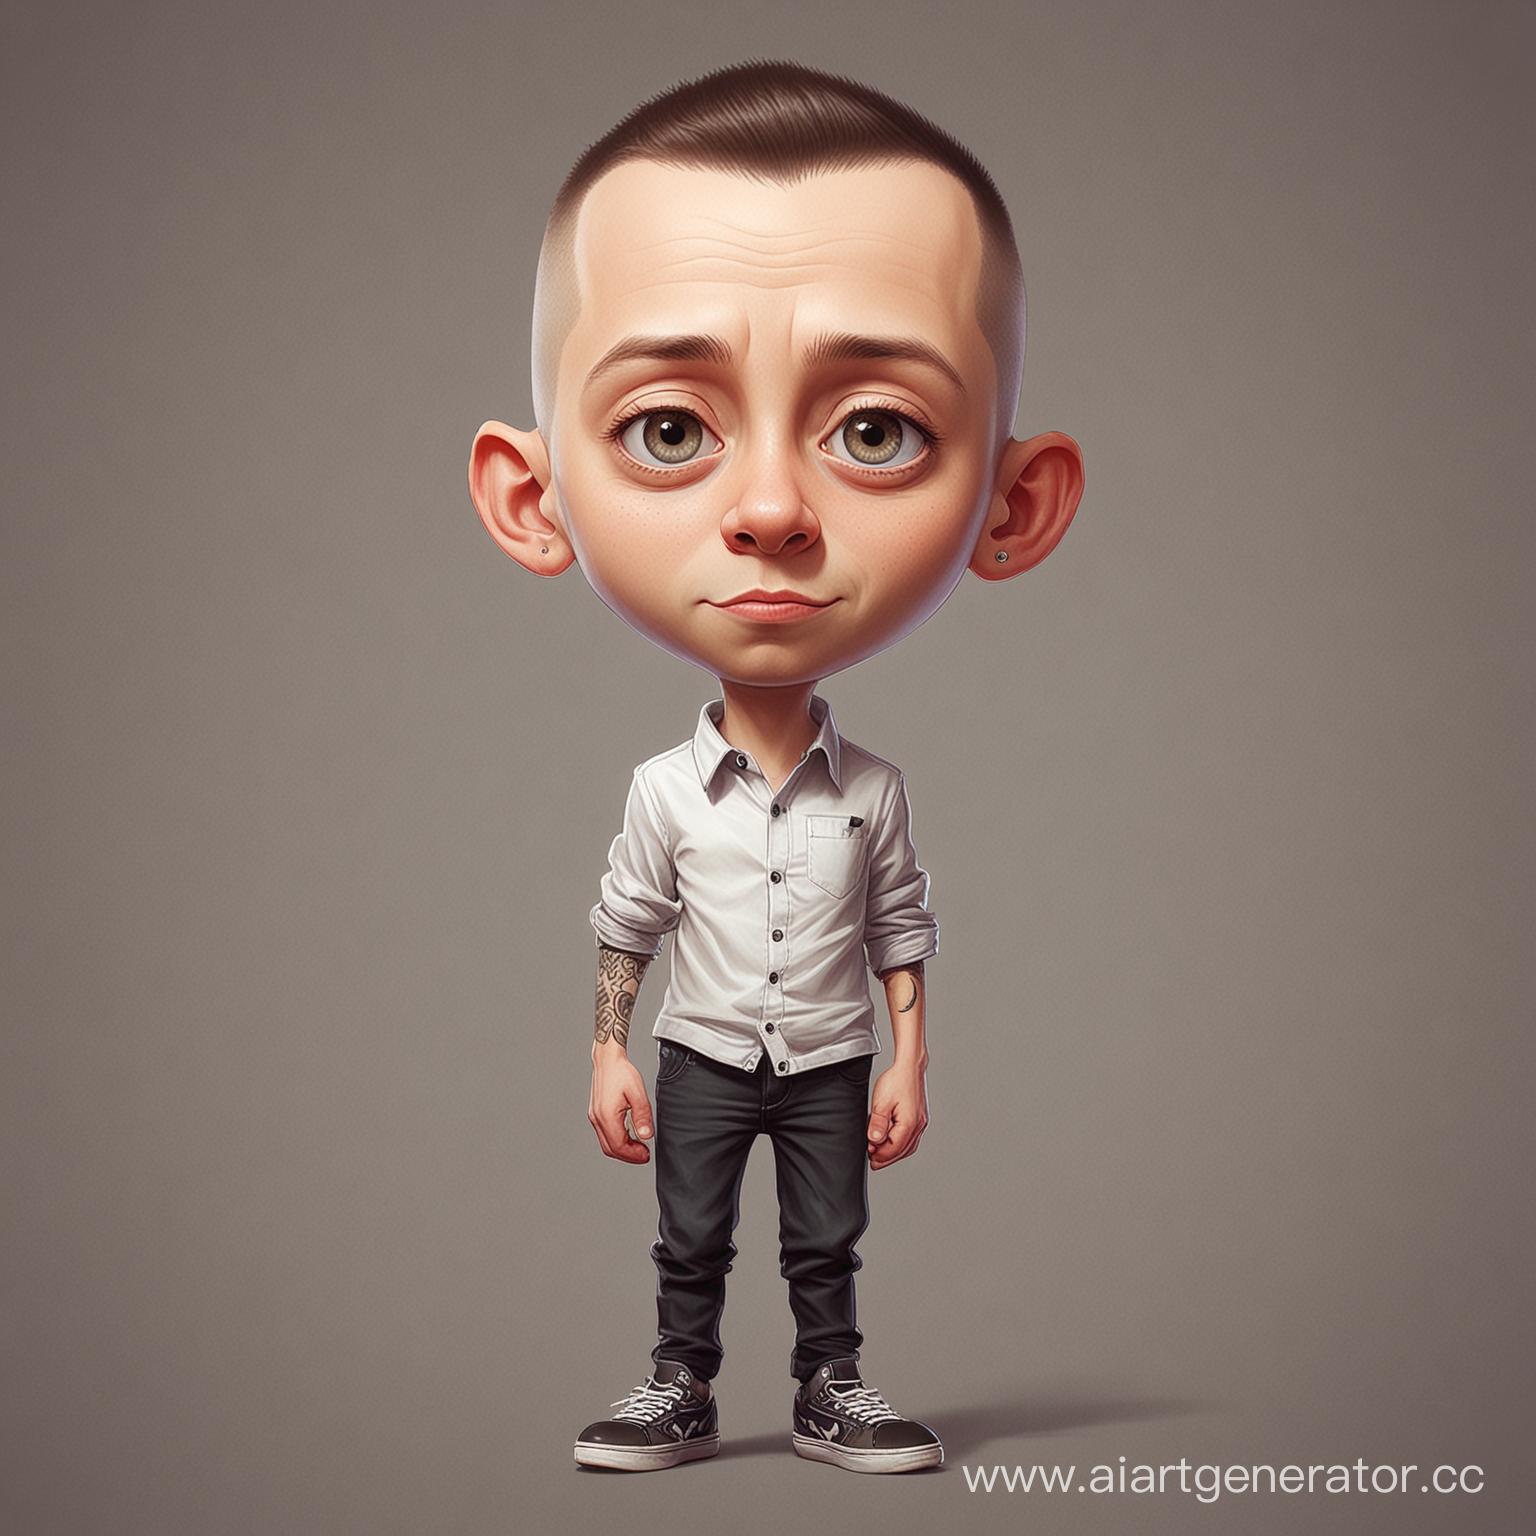 Нарисуй исполнителя Оксимирона в виде детской мультяшной модели в полный рост в стиле Pixar персонажей
